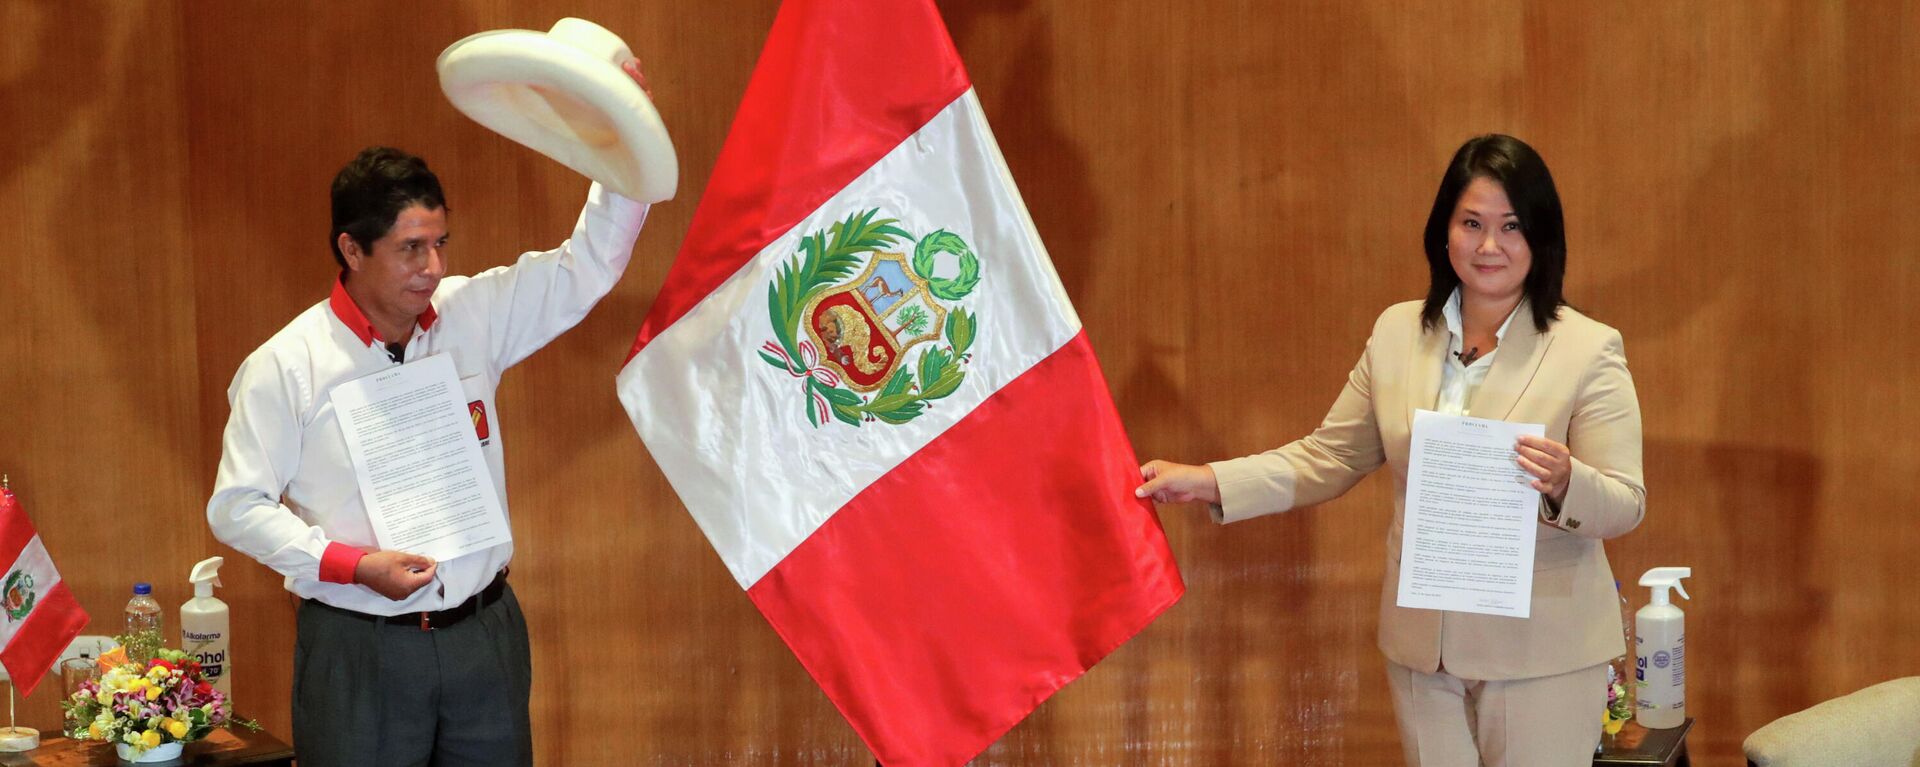 Los candidatos Pedro Castillo (Perú Libre, izquierda) y Keiko Fujimori (Fuerza Popular, derecha) - Sputnik Mundo, 1920, 30.05.2021